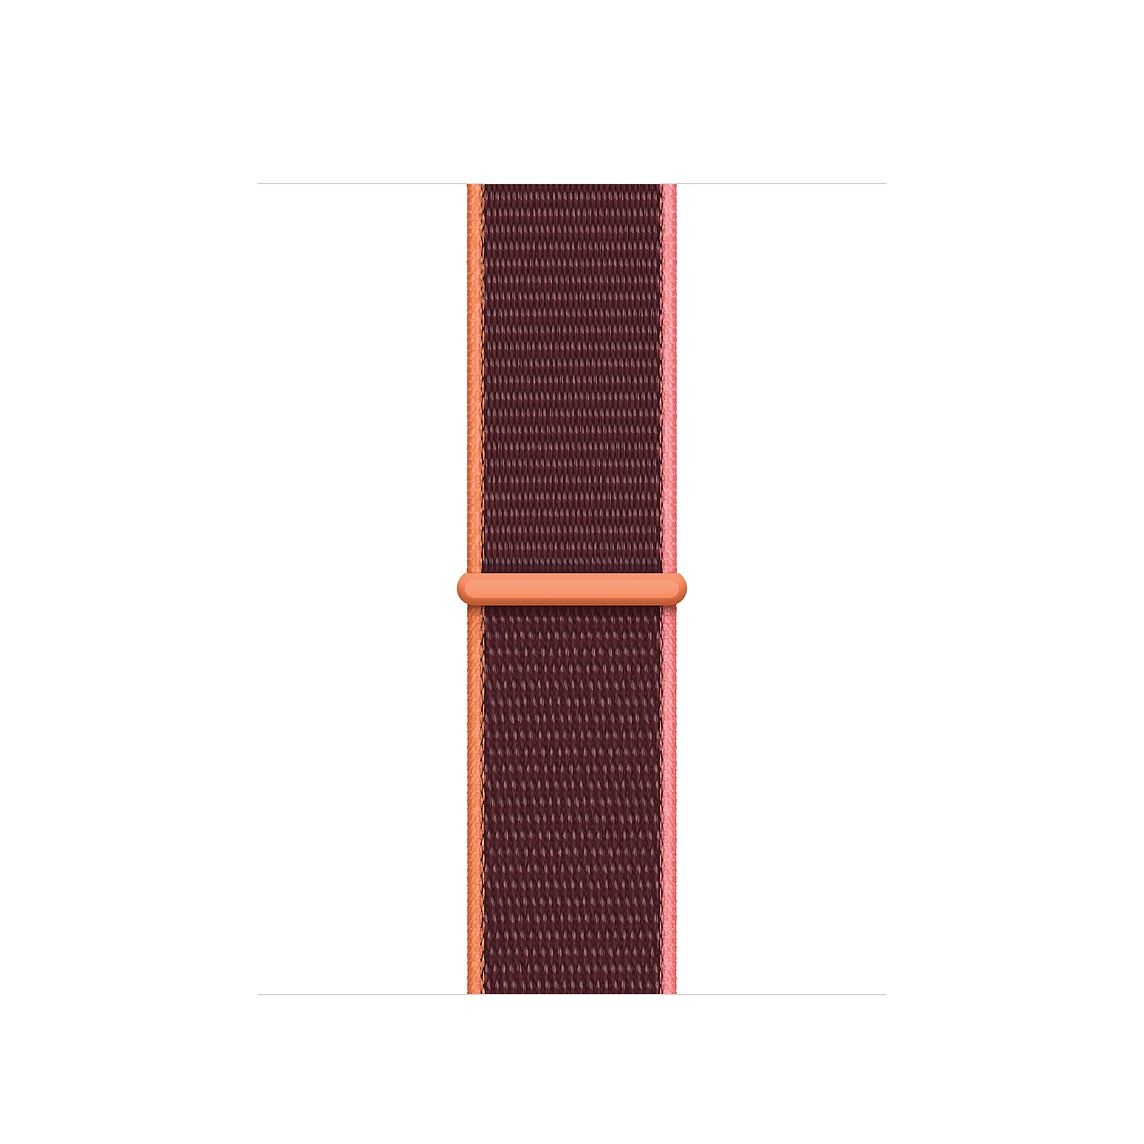 Bracelet boucle sport en nylon Apple Watch sportif - plum